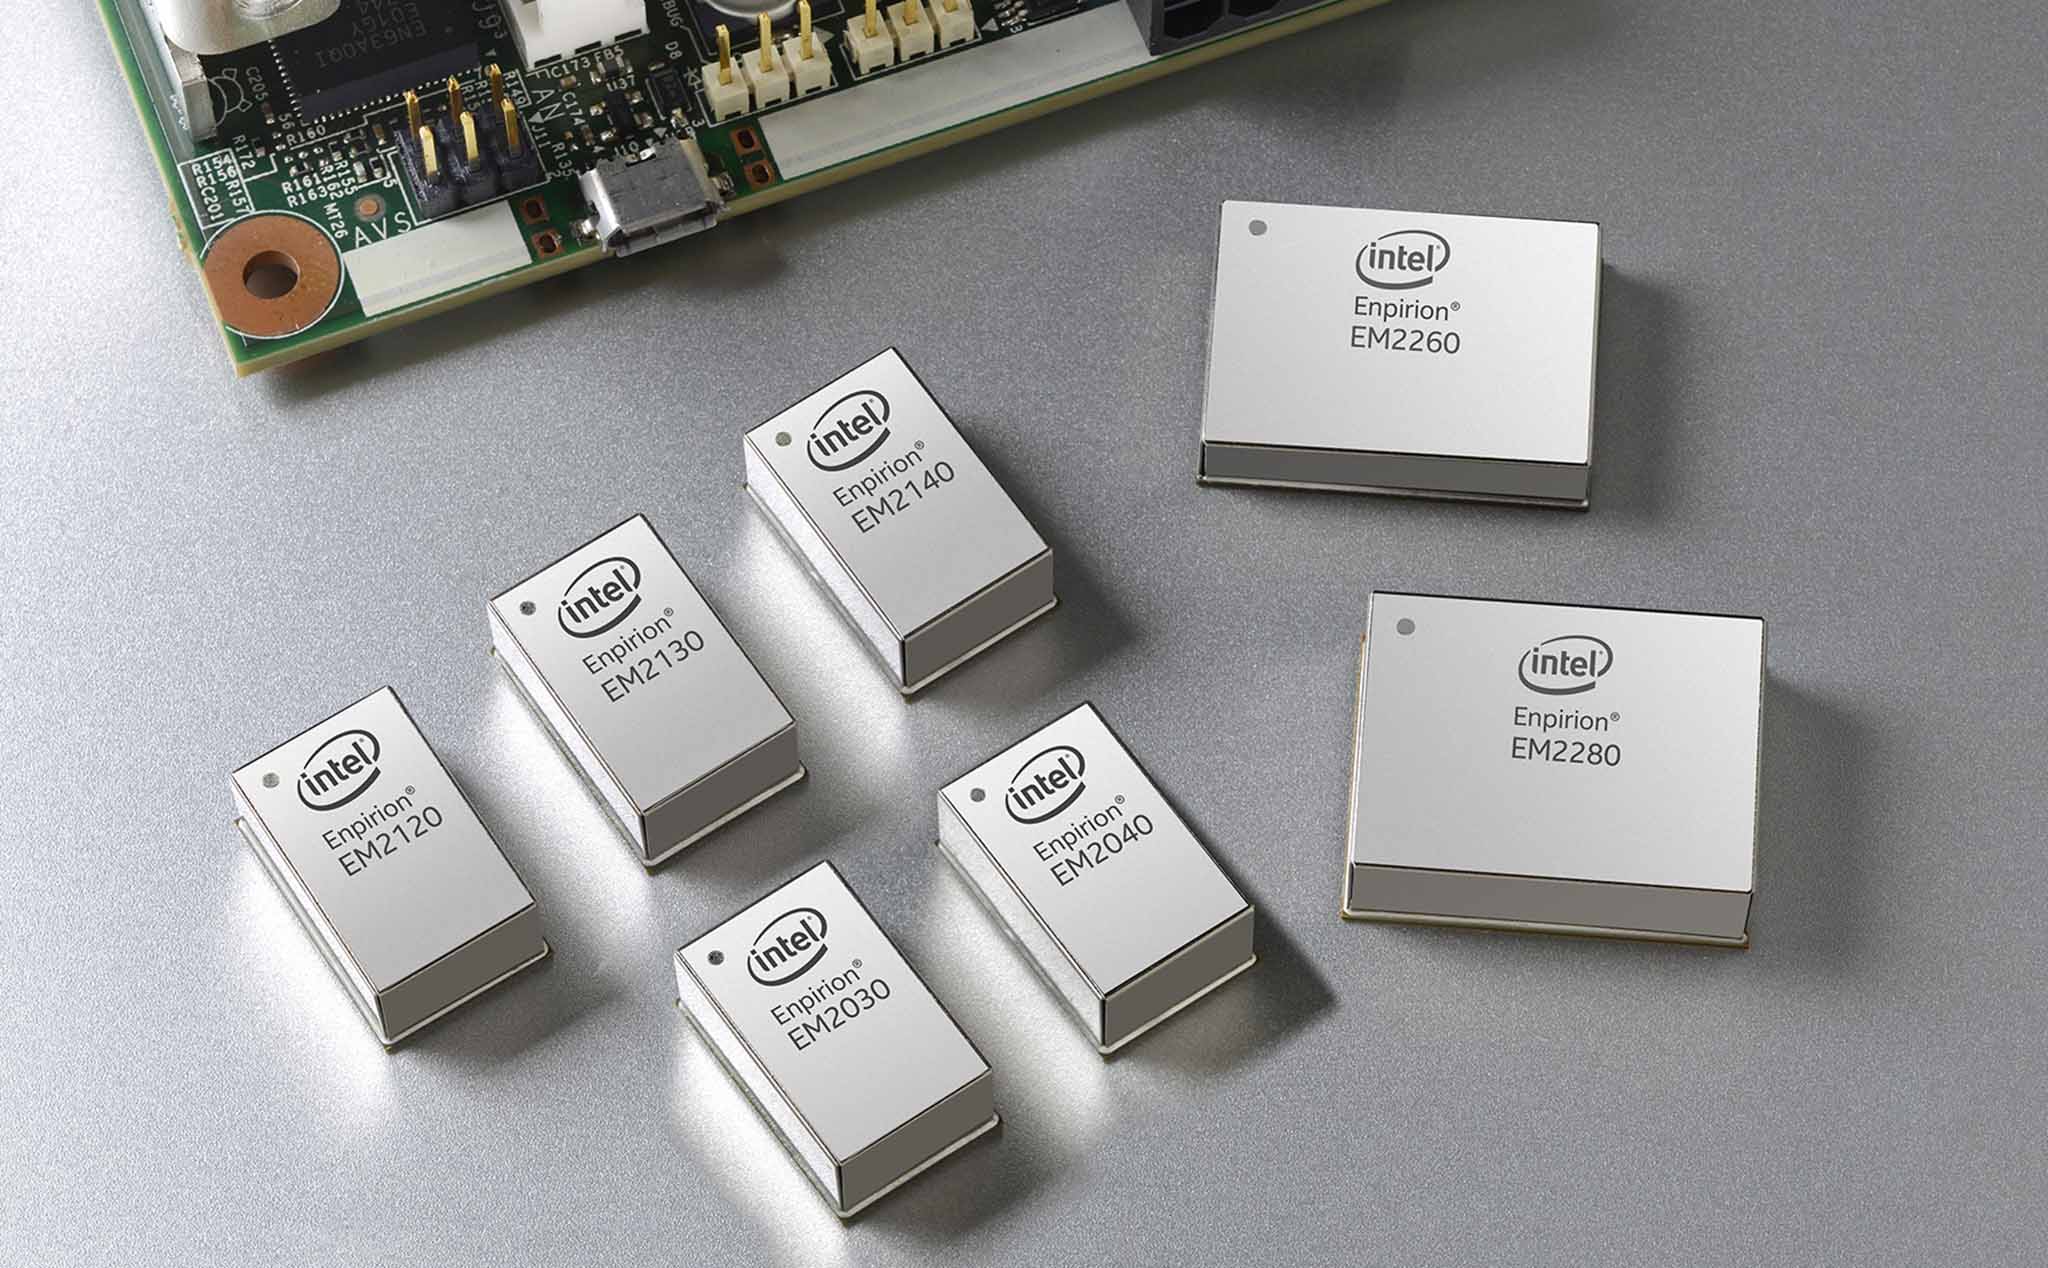 MediaTek mua lại mảng làm chip nguồn Enpirion của Intel với giá 85 triệu đô